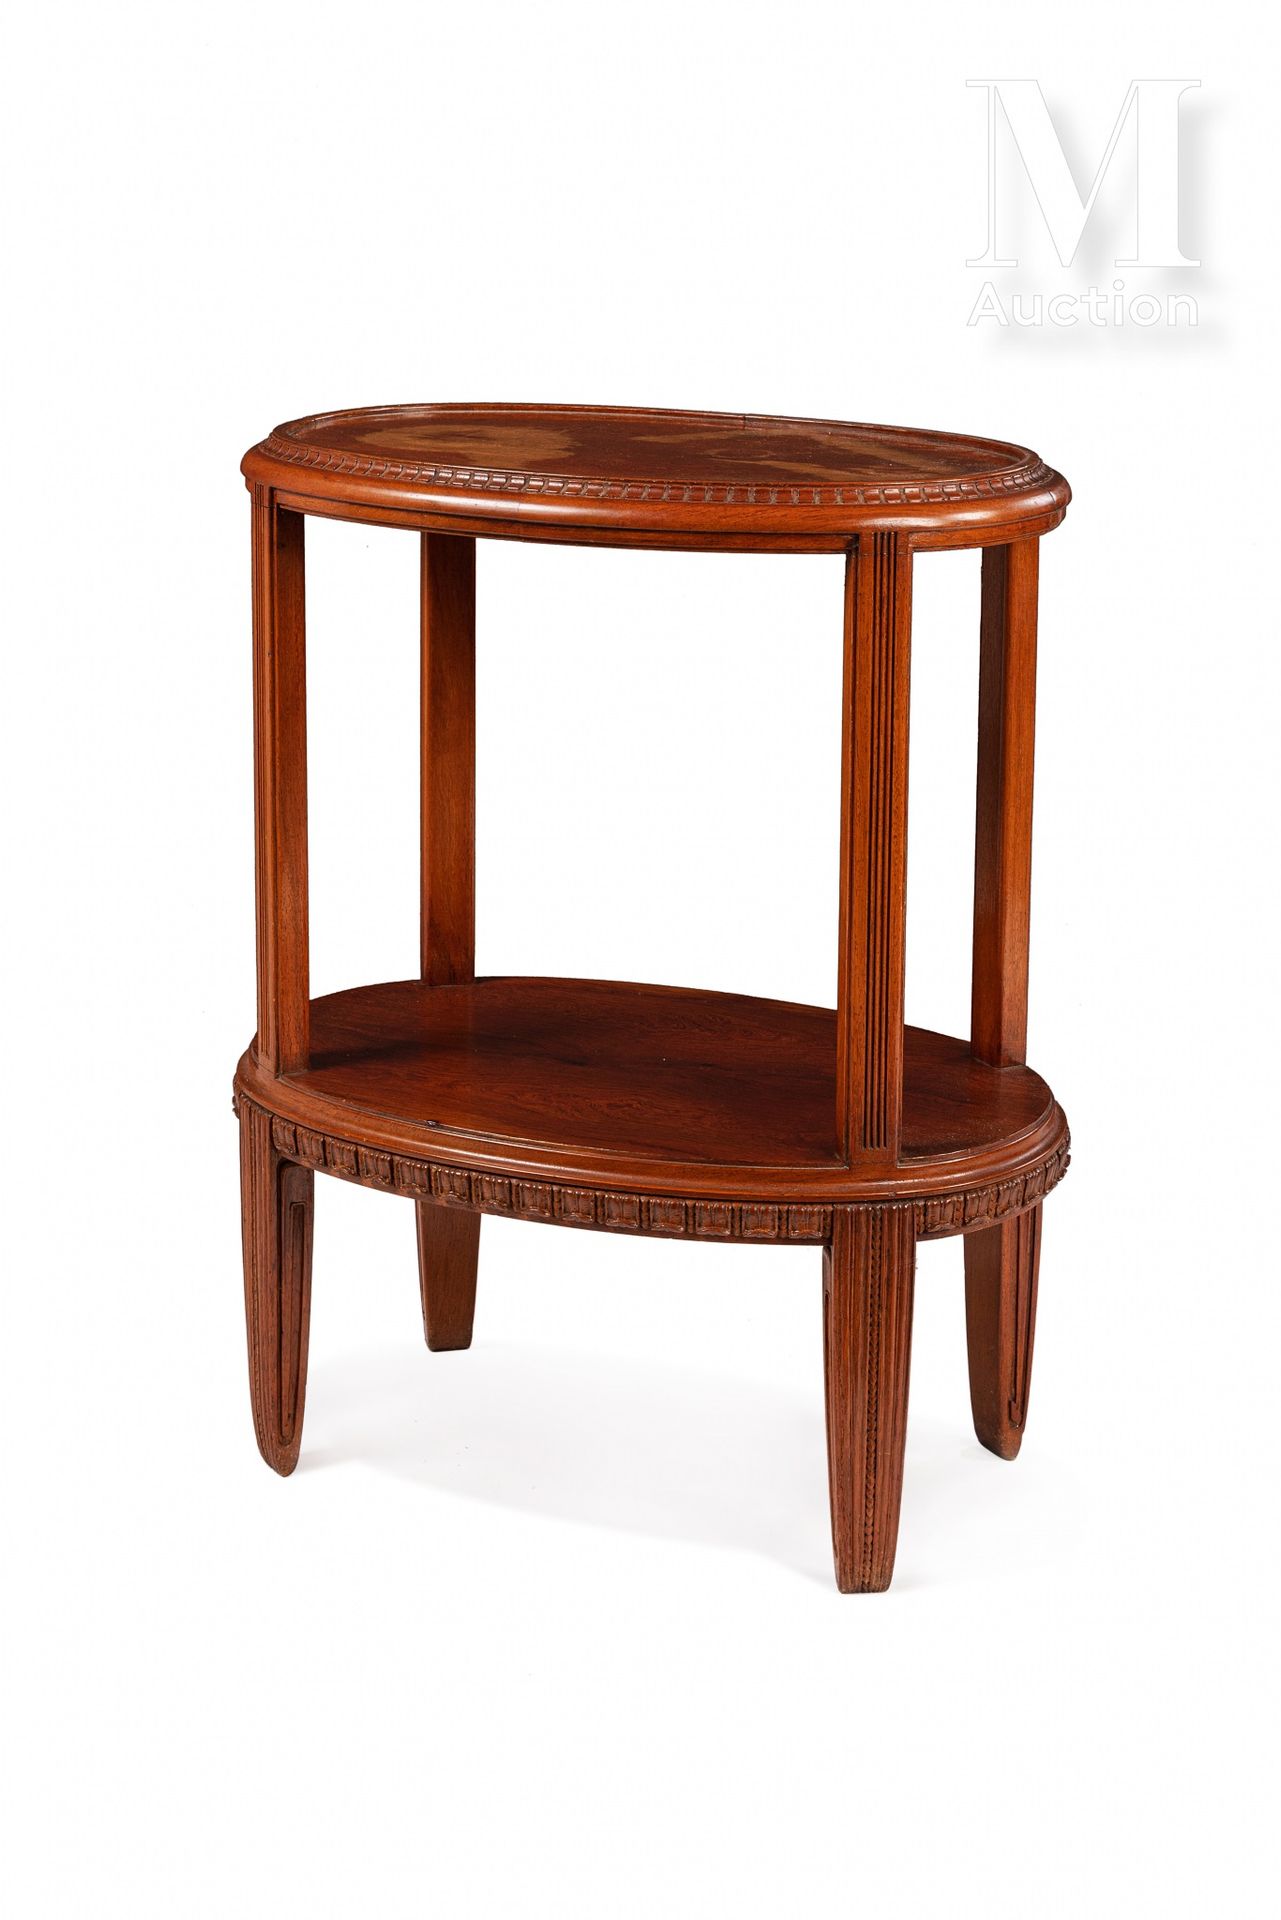 Paul Follot (1877-1941) 雕刻的桃花心木中桌，有两个叠加的椭圆形桌面，放在直槽的直立物上，最后是四个锥形的腿。

烫金的 "保罗-福洛特"&hellip;